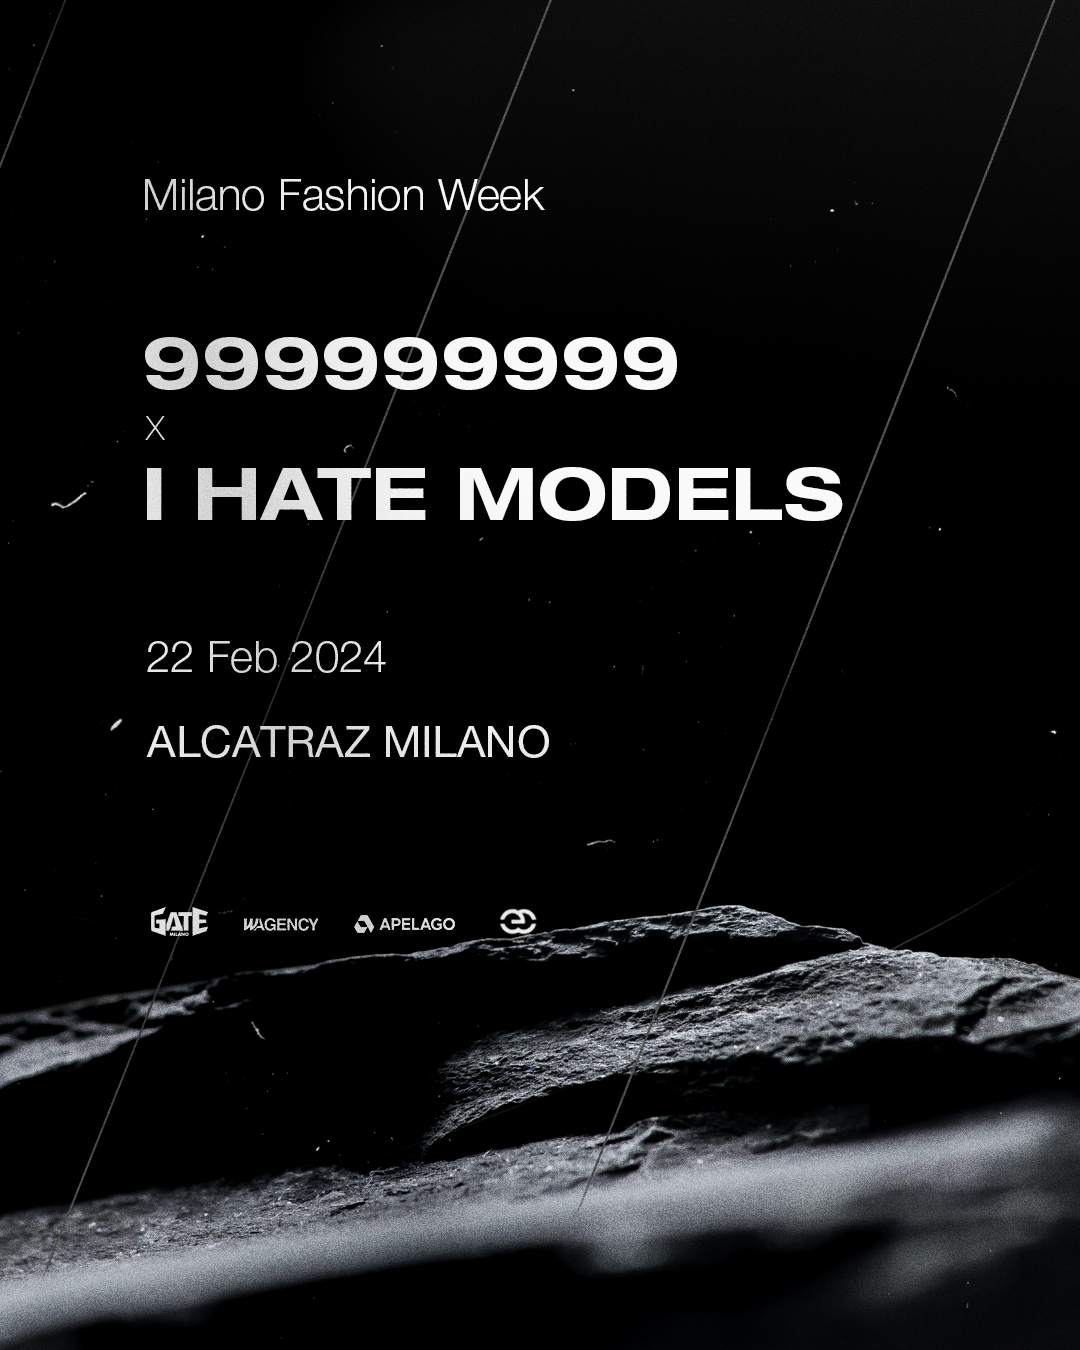 999999999 x I Hate Models - Alcatraz Milano - MFW - Página trasera